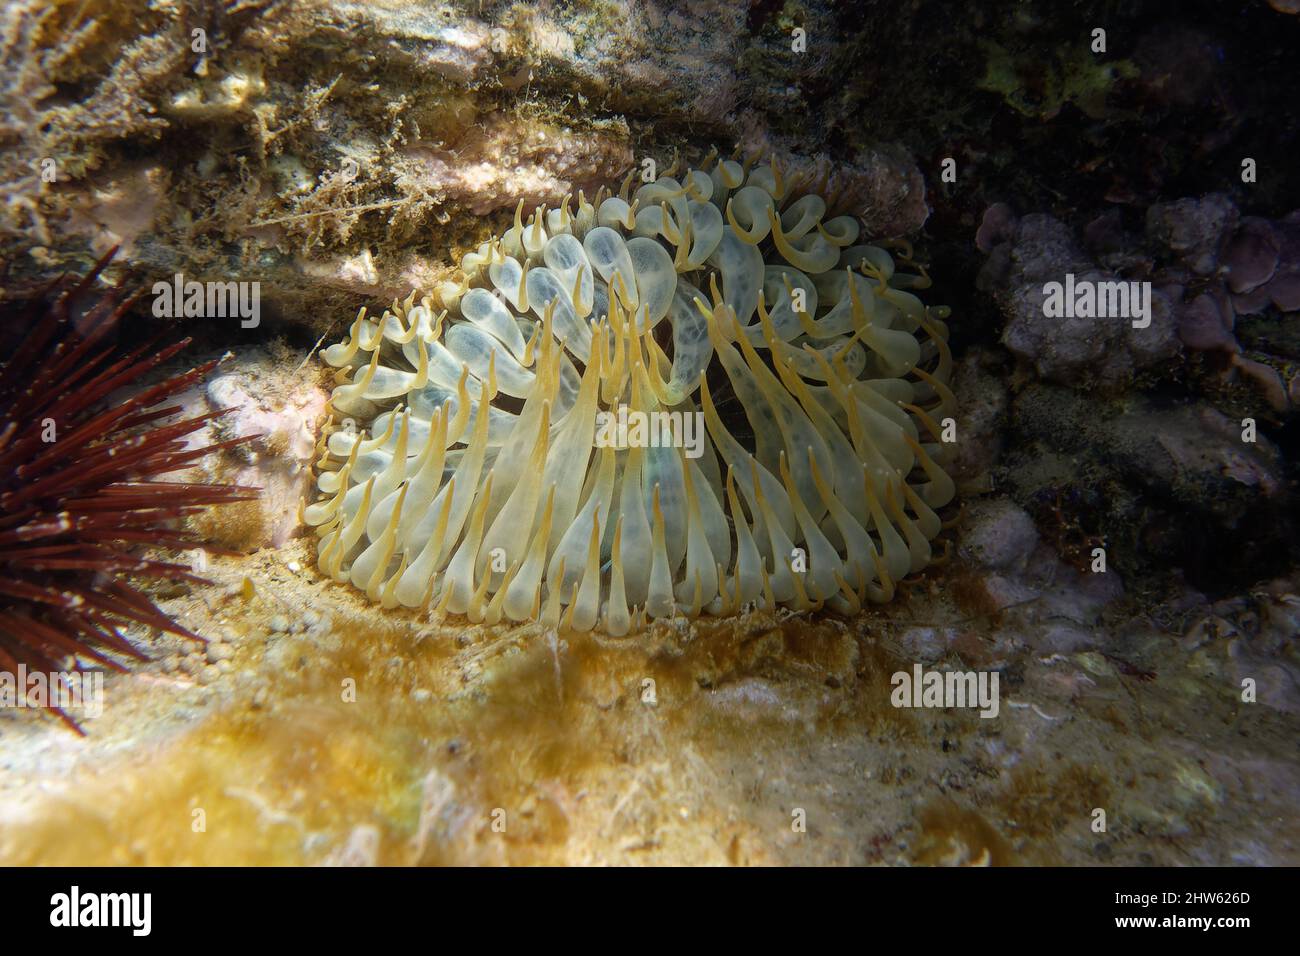 Trumpet anemone (Aiptasia mutabilis) in Mediterranean Sea Stock Photo